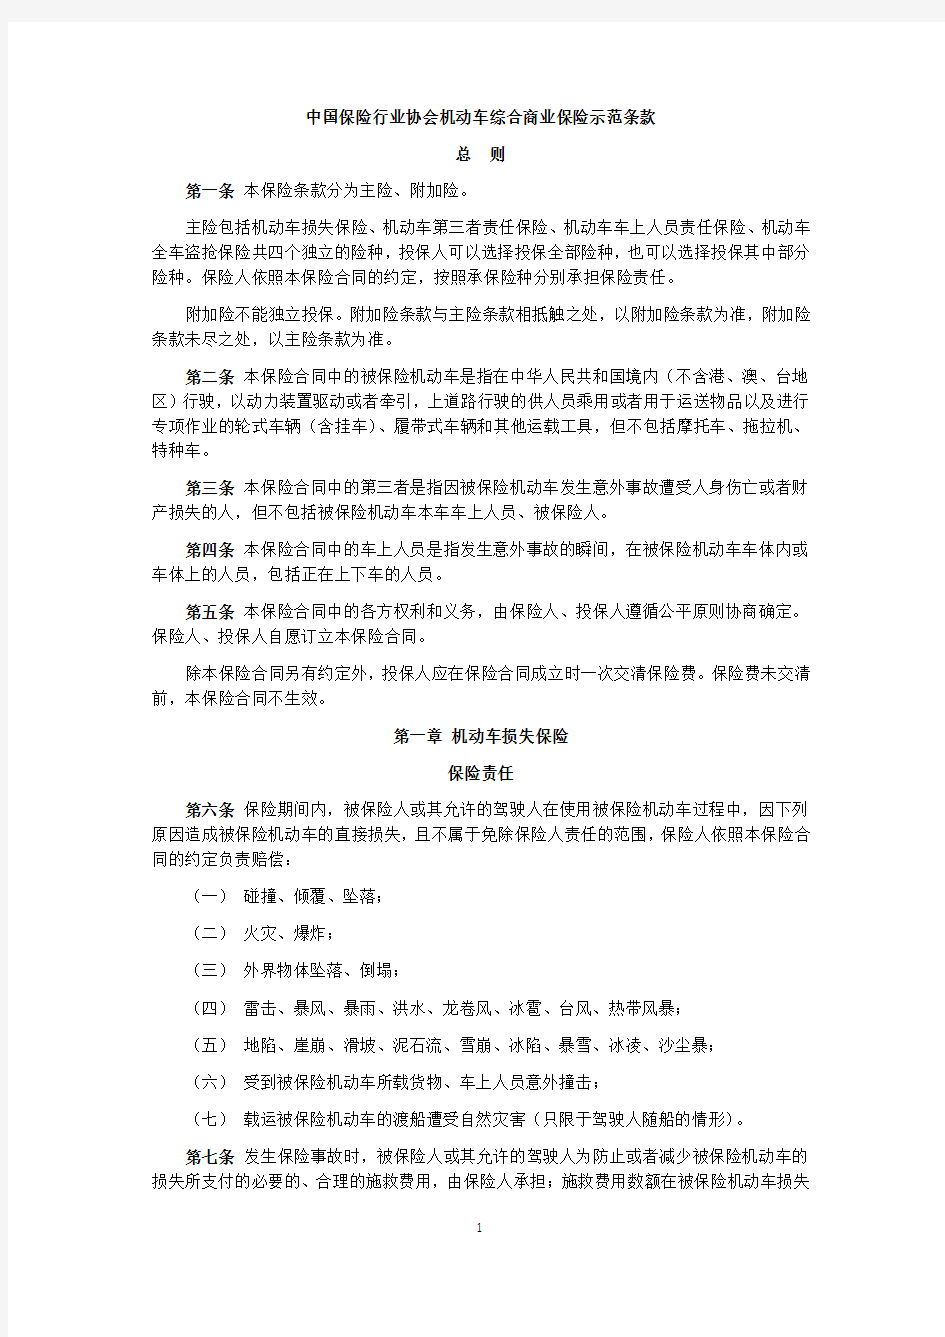 中国保险行业协会机动车综合商业保险示范条款(2014版)